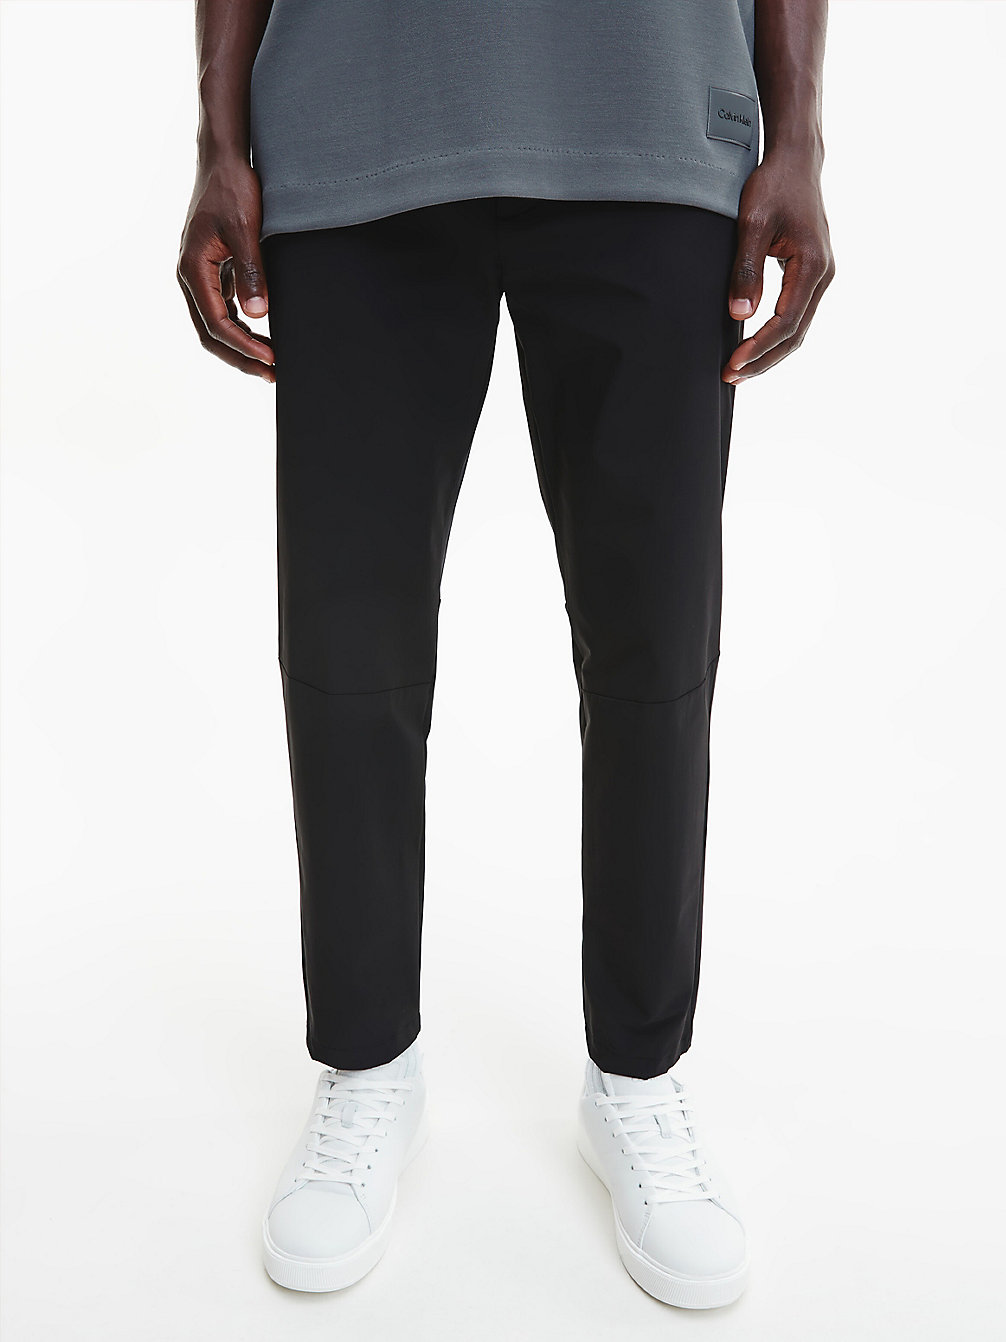 Pantaloni Tecnici In Twill Elasticizzati Affusolati > CK BLACK > undefined uomo > Calvin Klein